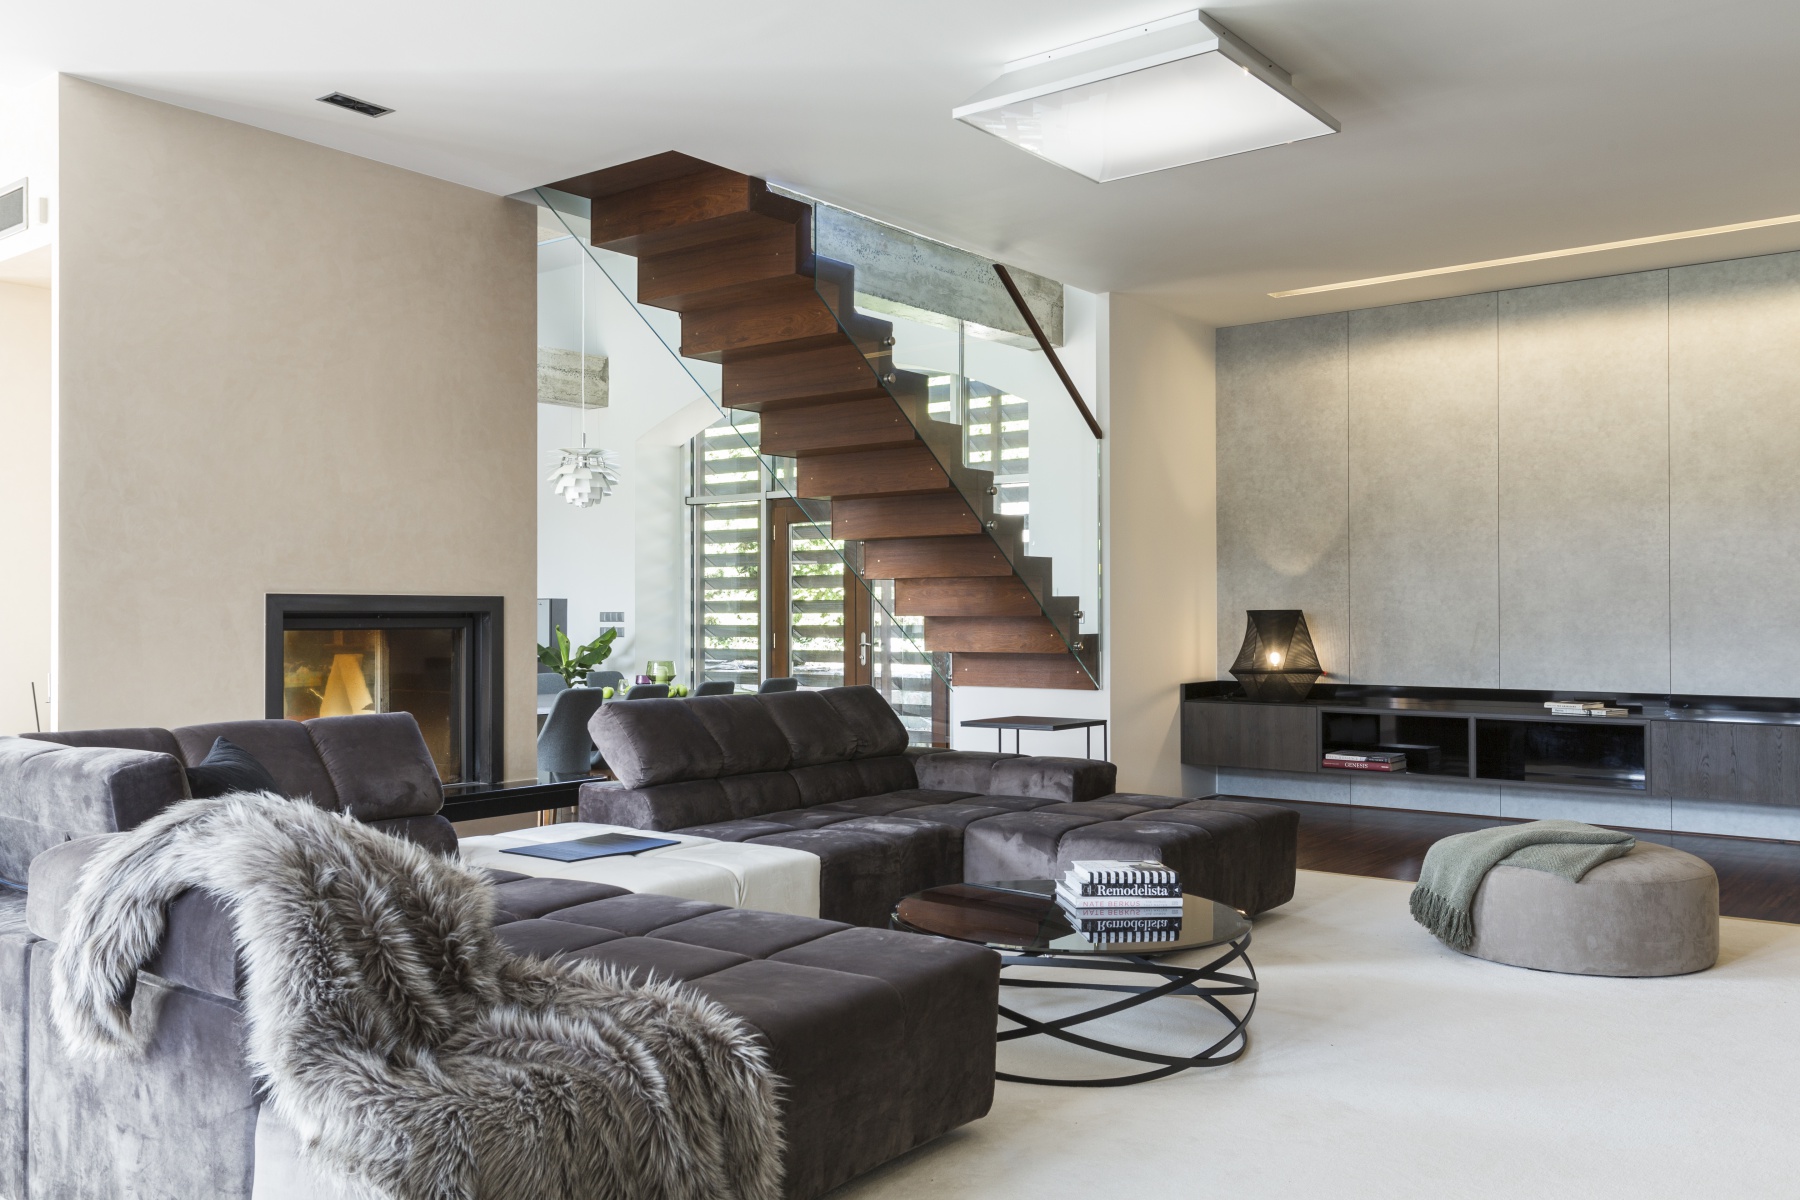 moderní obývací pokoj se schodištěm - Urban interior